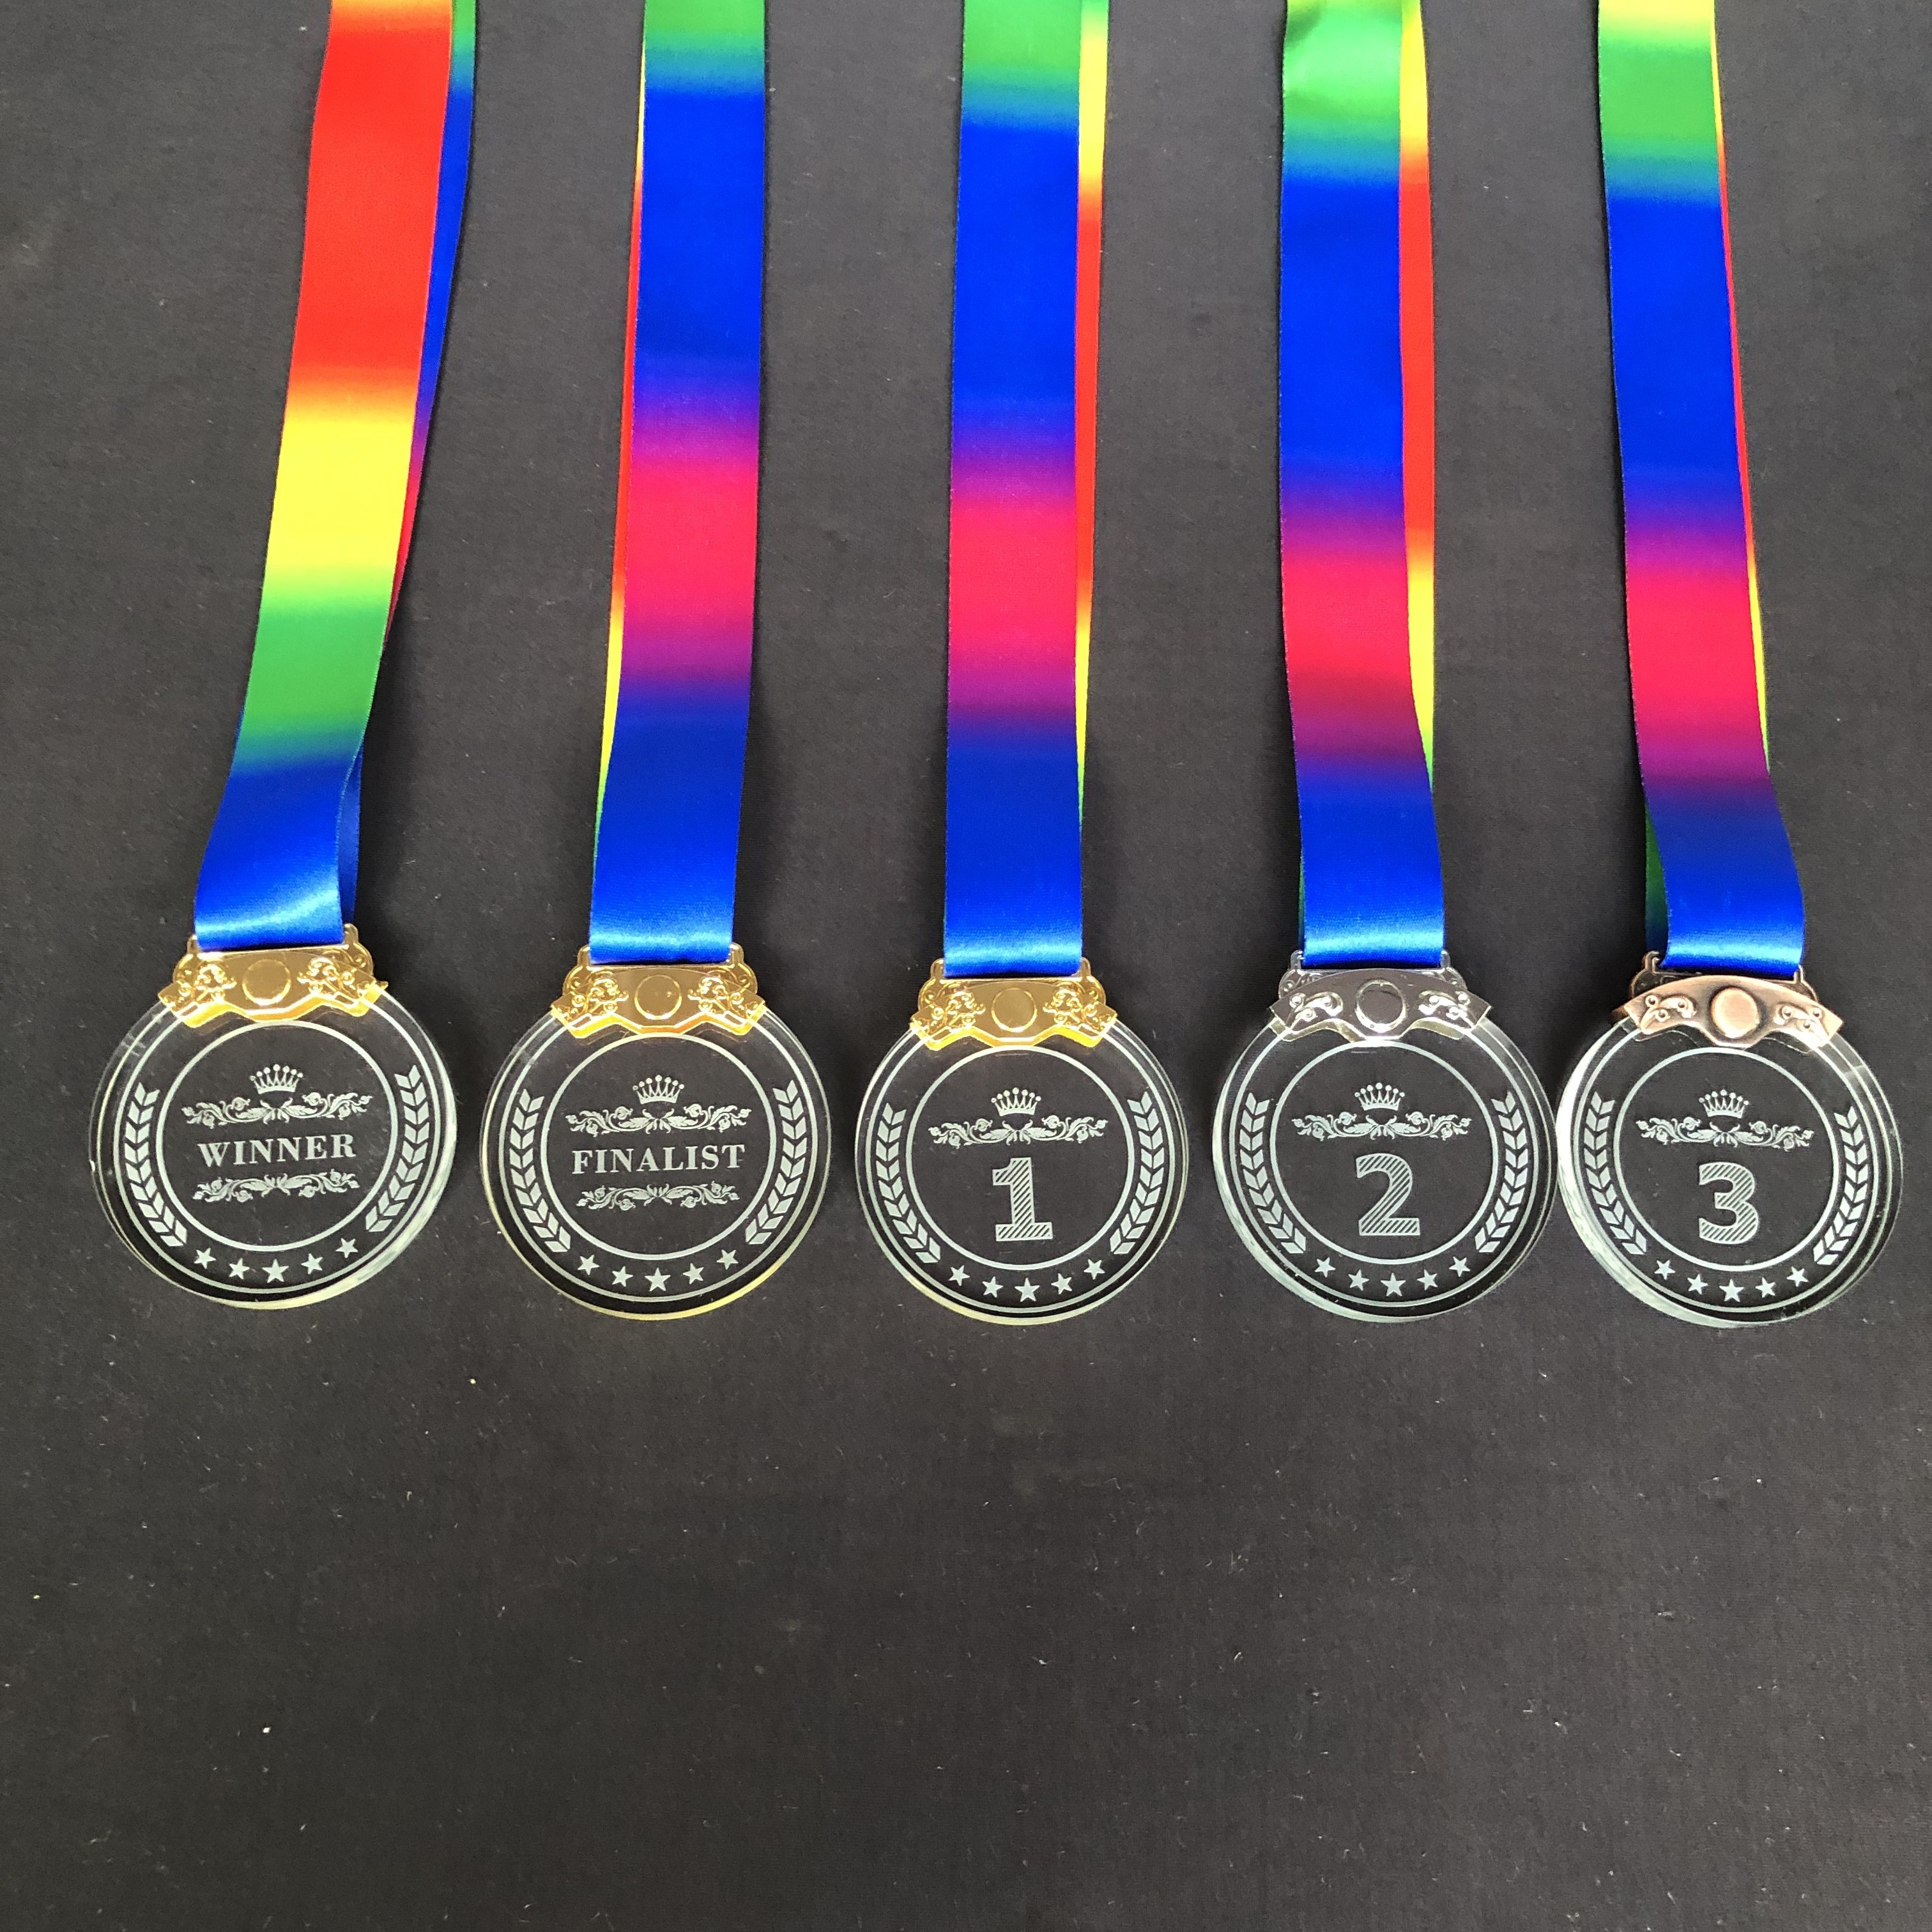 Medallas de tamaño completo, premios militares estadounidenses, acabado en  bronce y espejo.